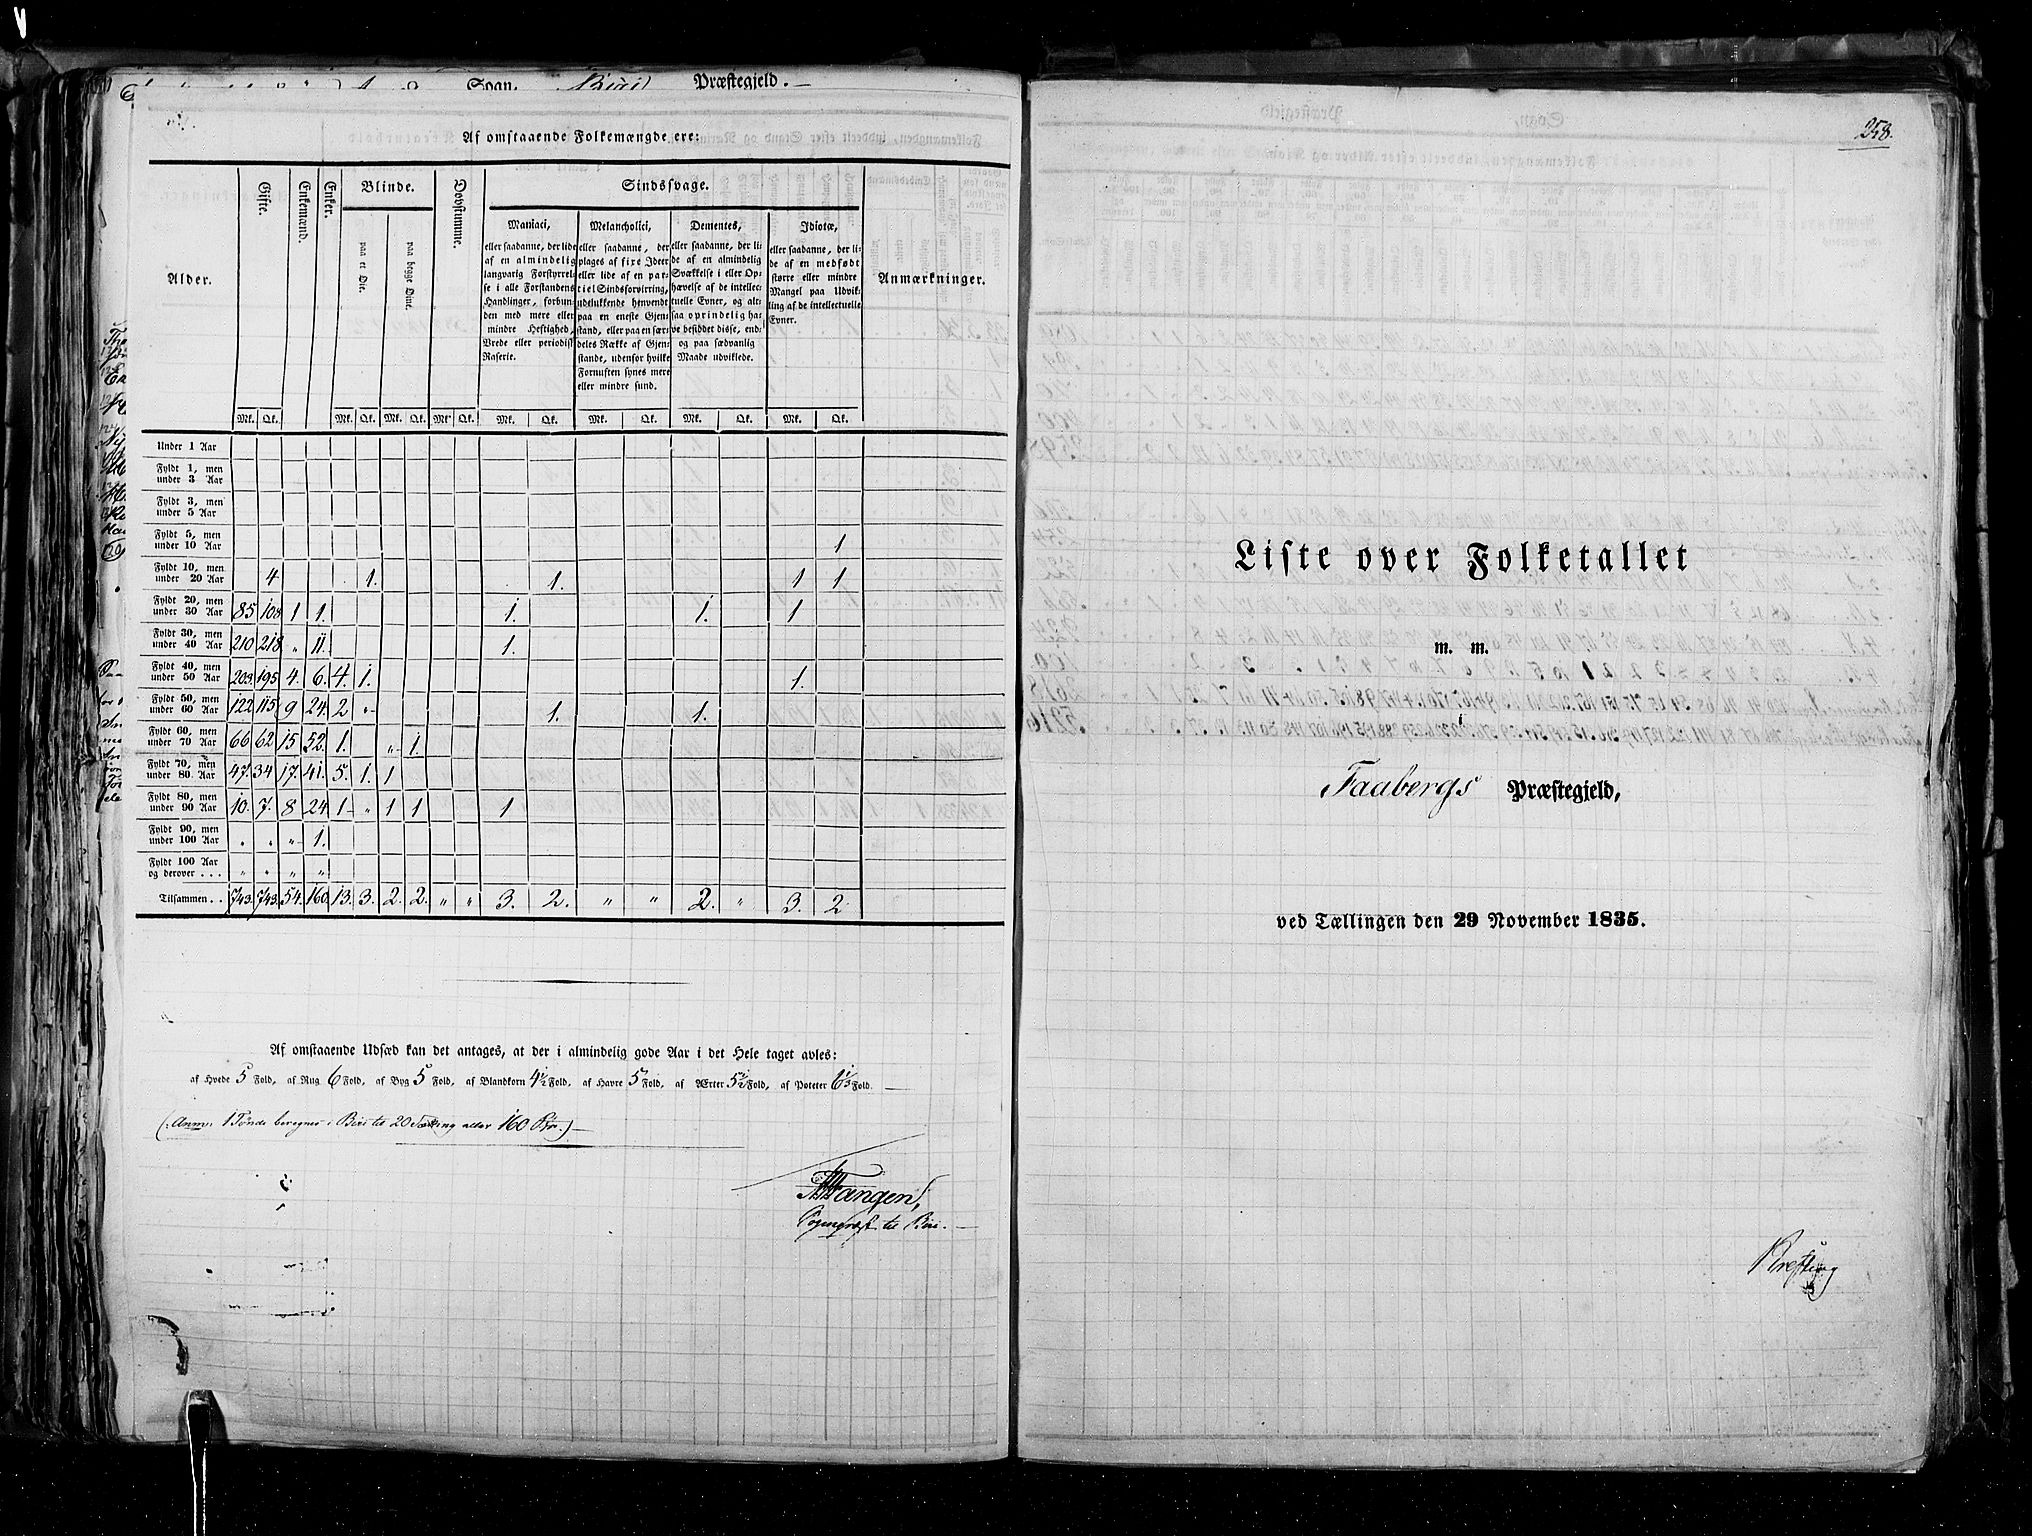 RA, Census 1835, vol. 3: Hedemarken amt og Kristians amt, 1835, p. 258